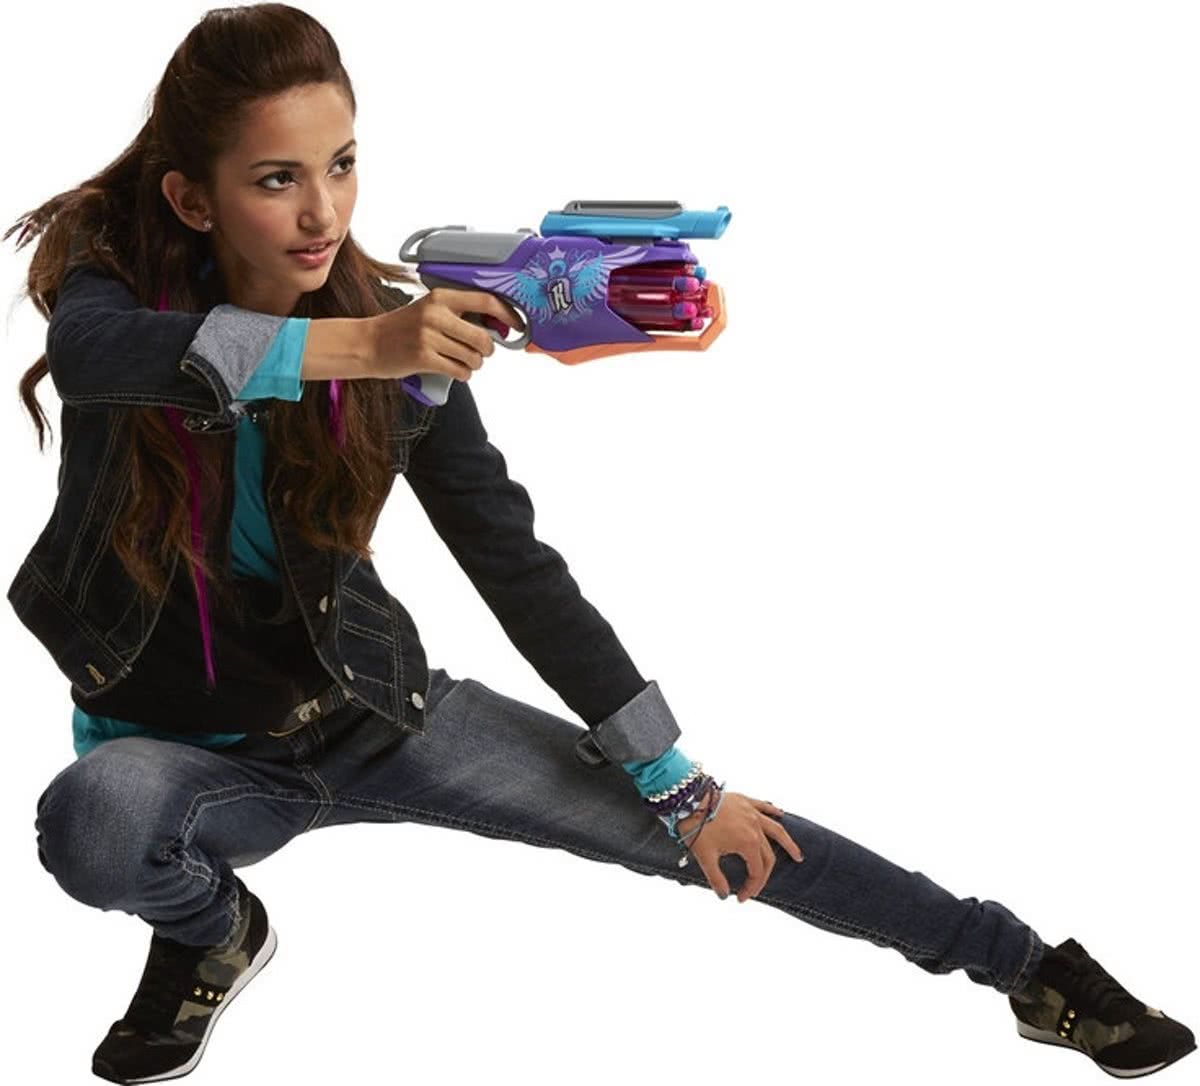 NERF Rebelle Spylight Starlight speelgoed Nerf gun met zaklamp (Nerf), Hasbro